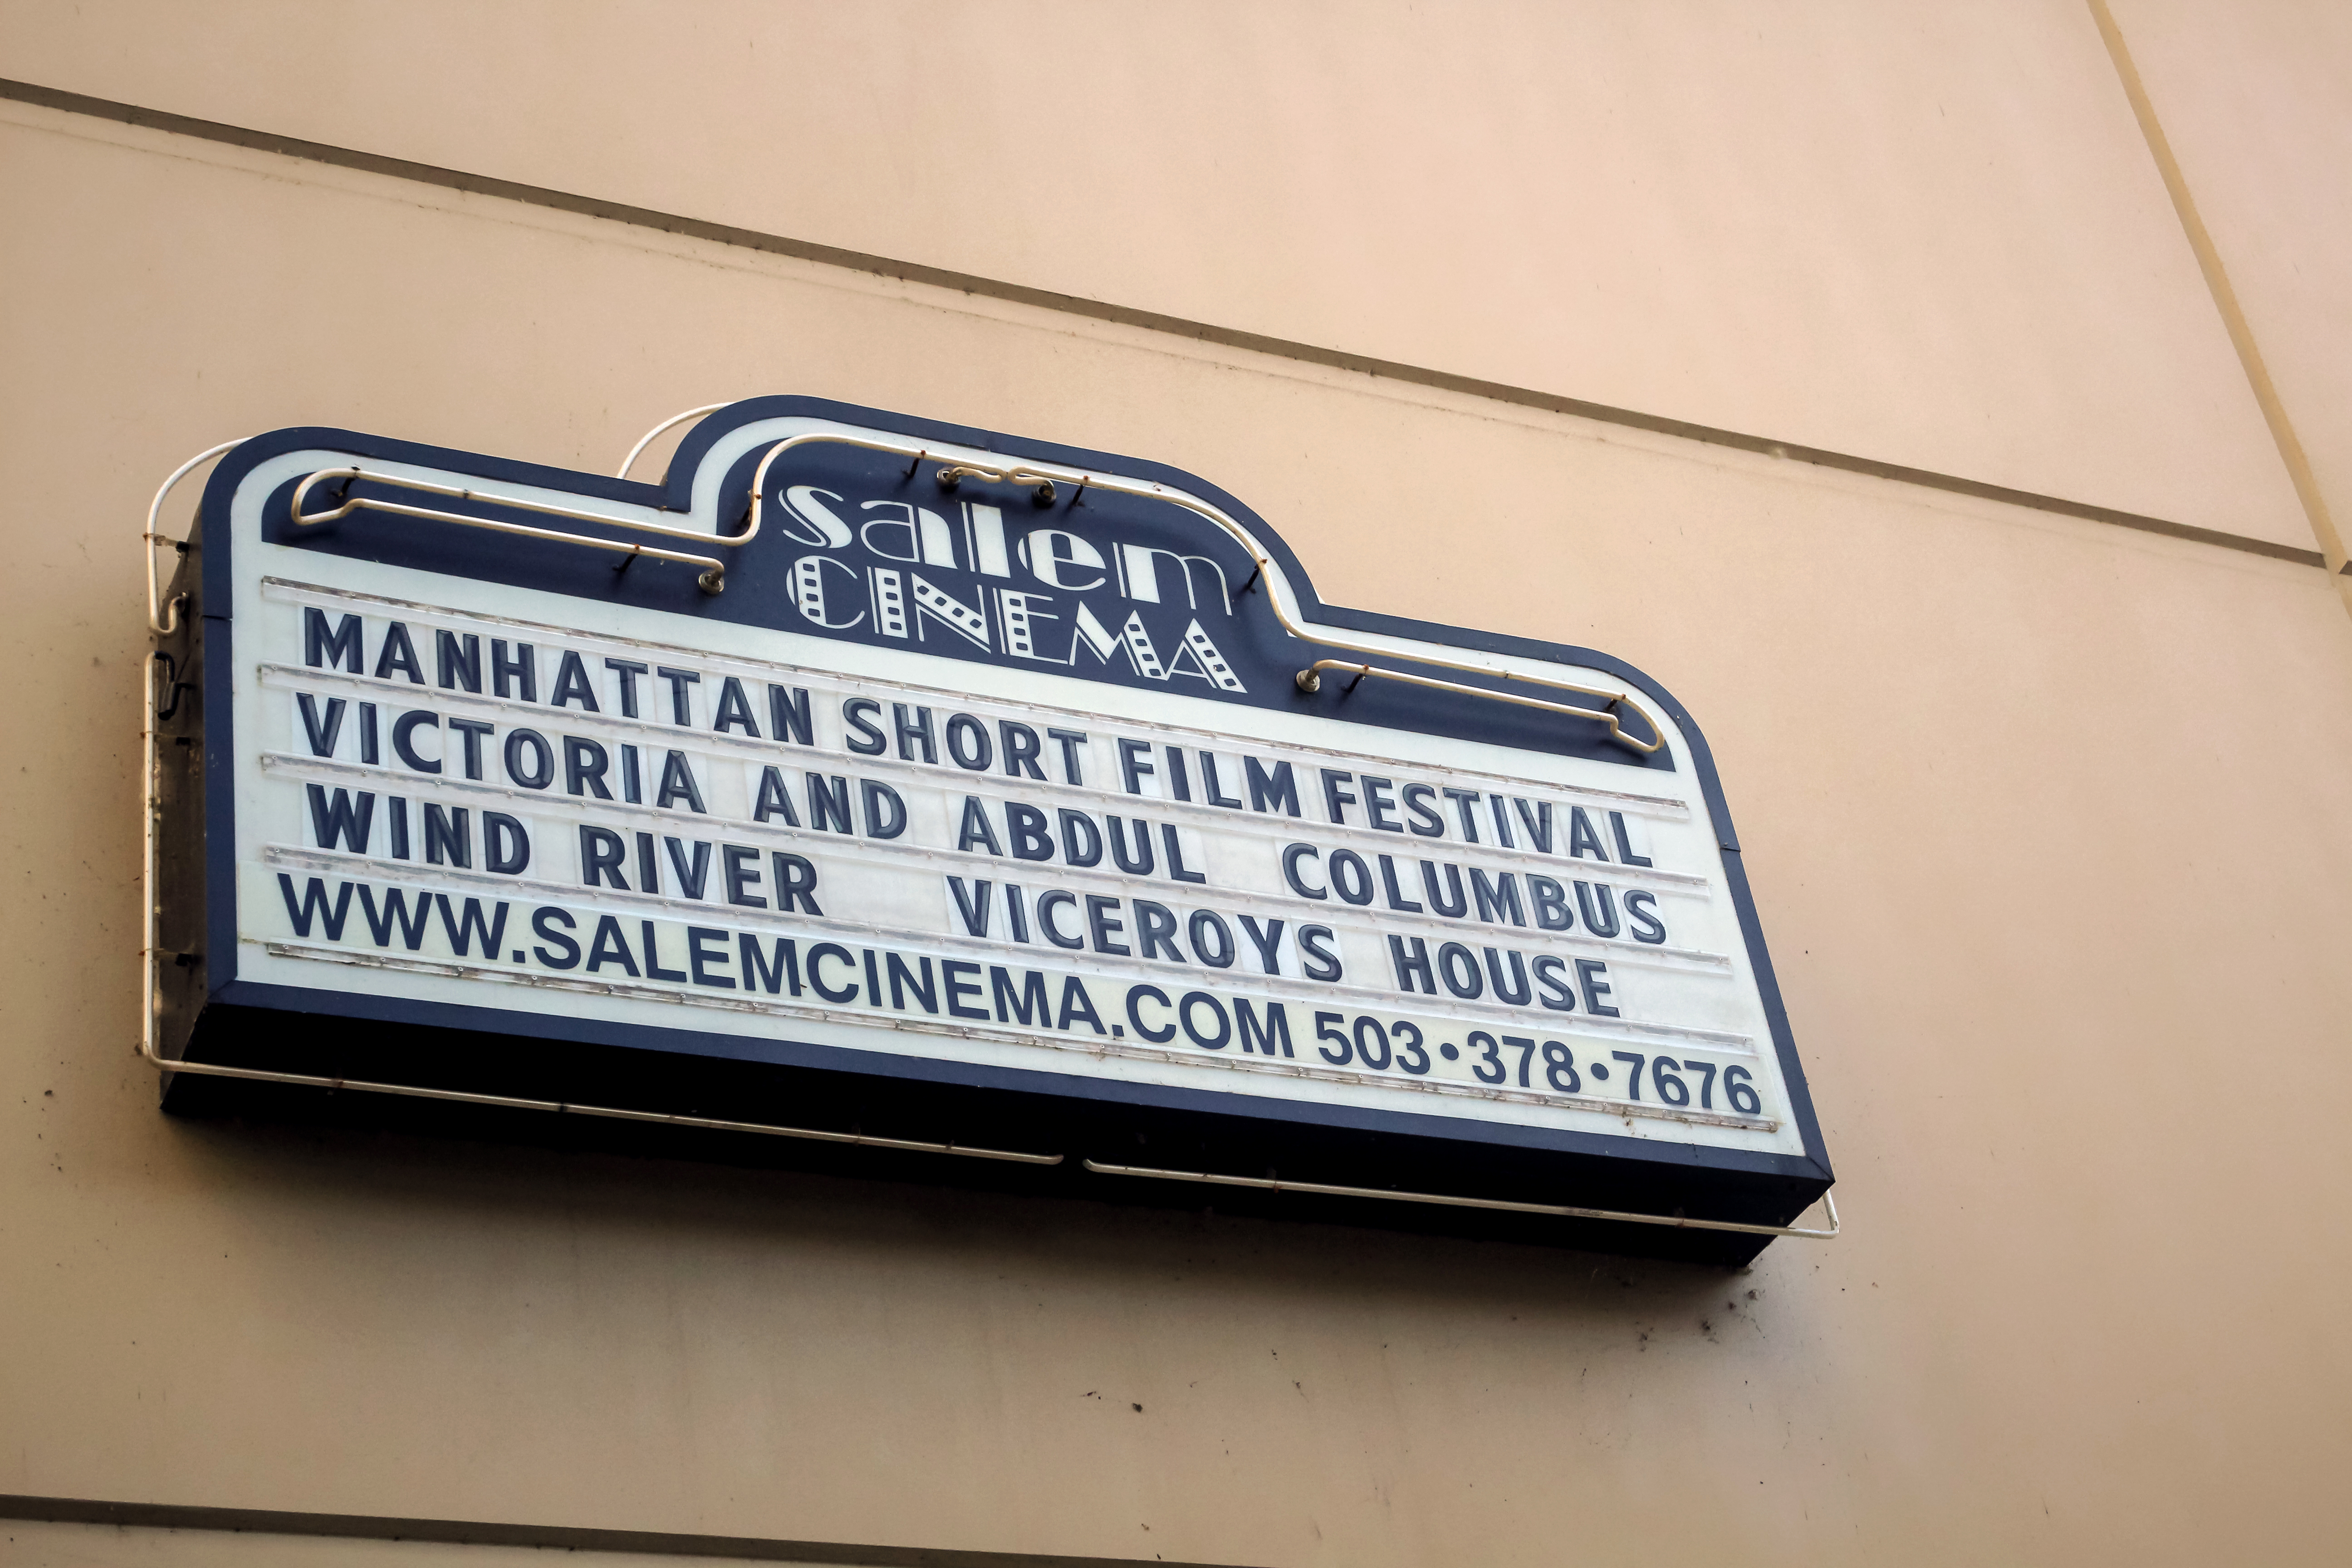 Salem Cinema introduces alternative film experience